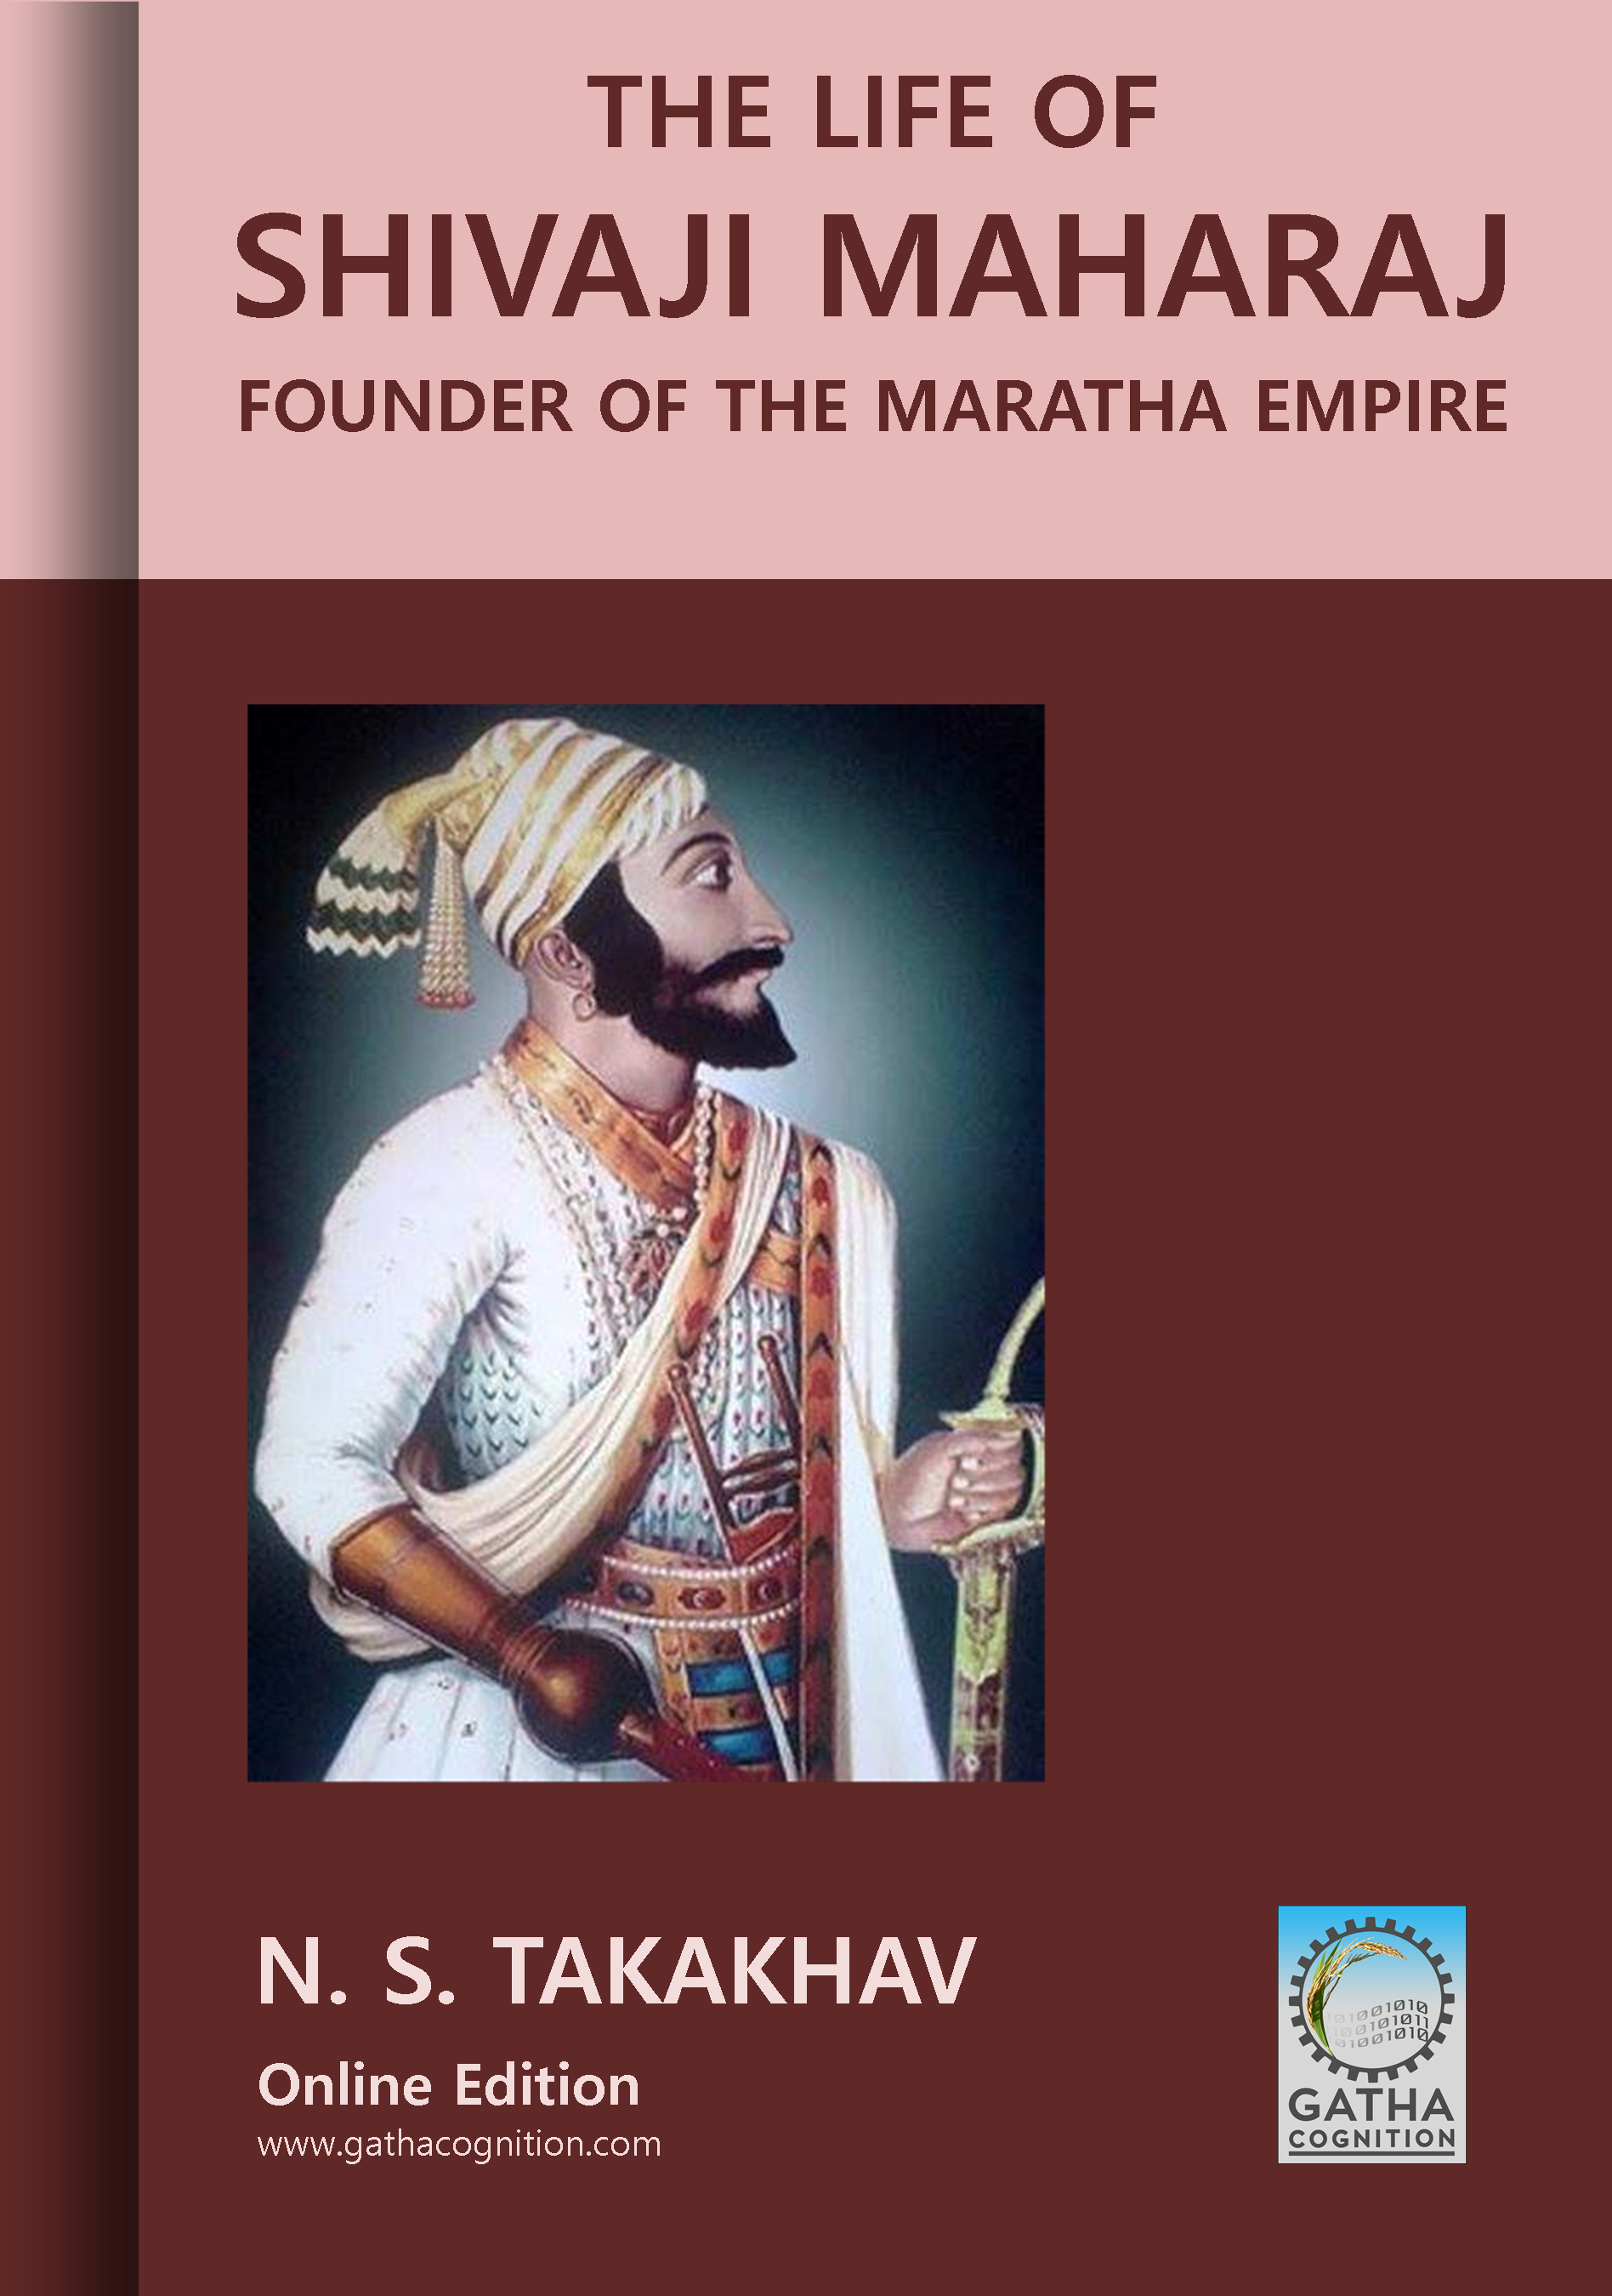 The Life of Shivaji Maharaj: Founder of the Maratha Empire